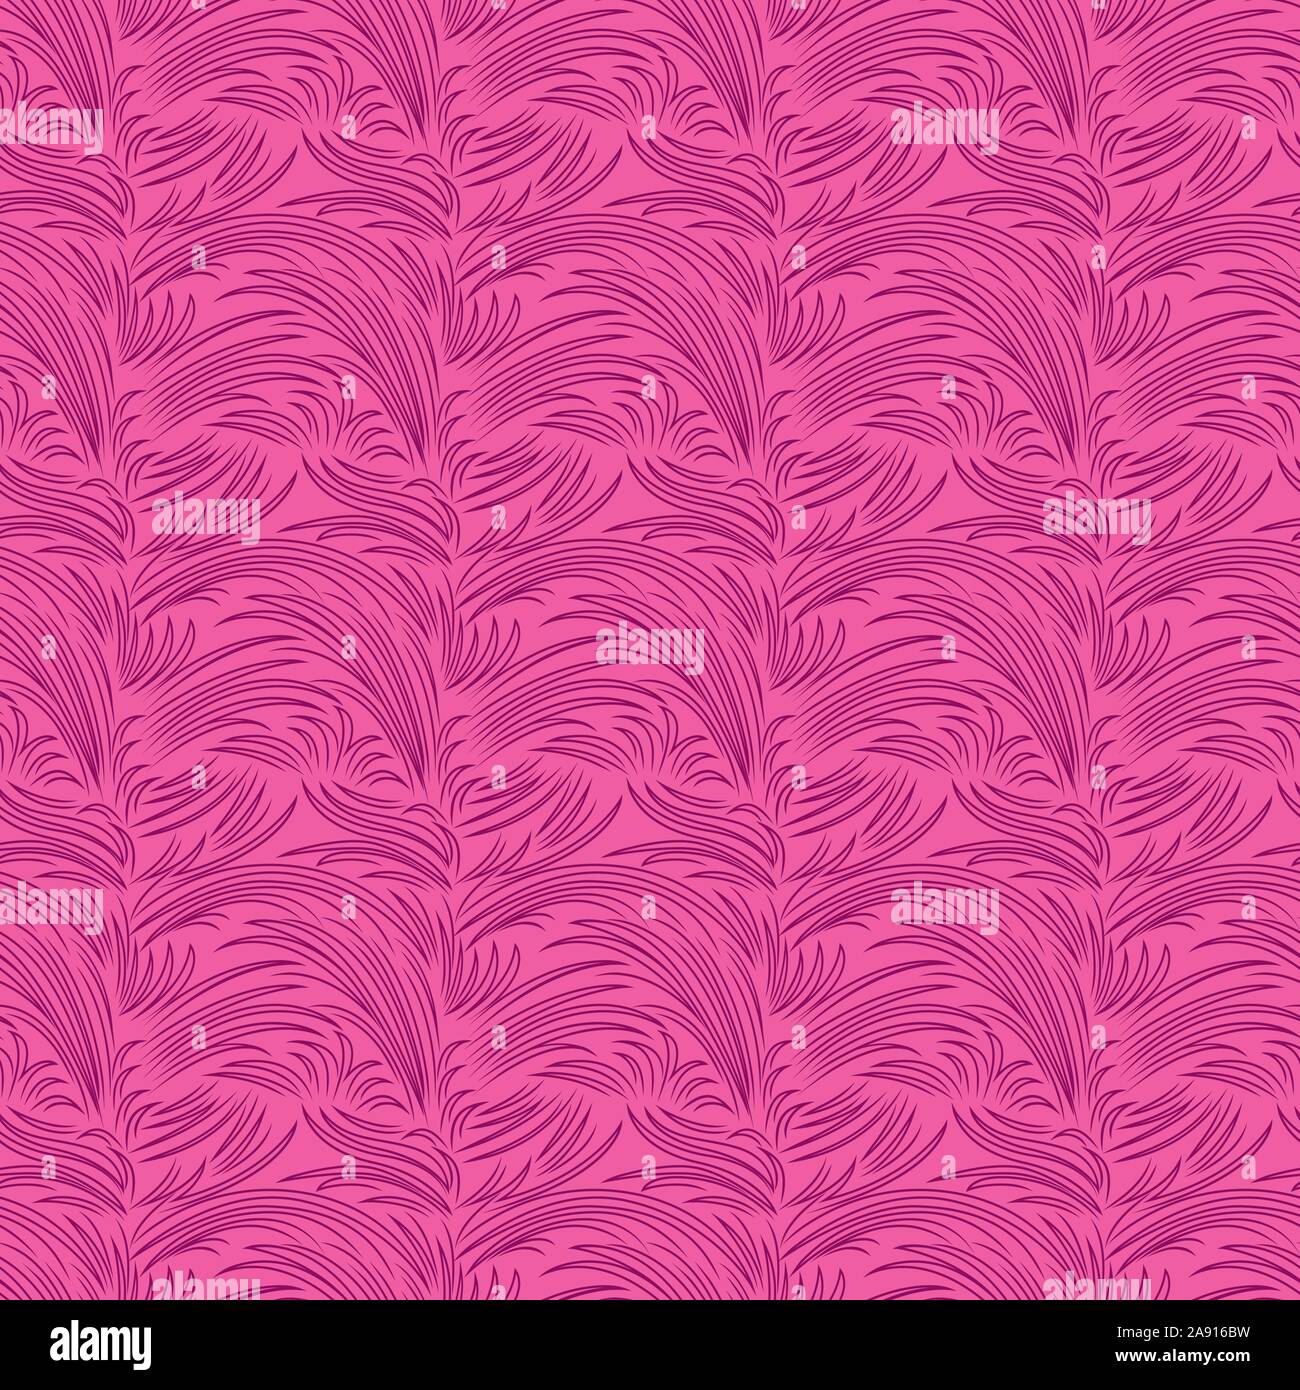 Seamless pattern astratti con linee casuale, simile a piante, magenta illustrazione sullo sfondo rosa, disegno a mano Illustrazione Vettoriale